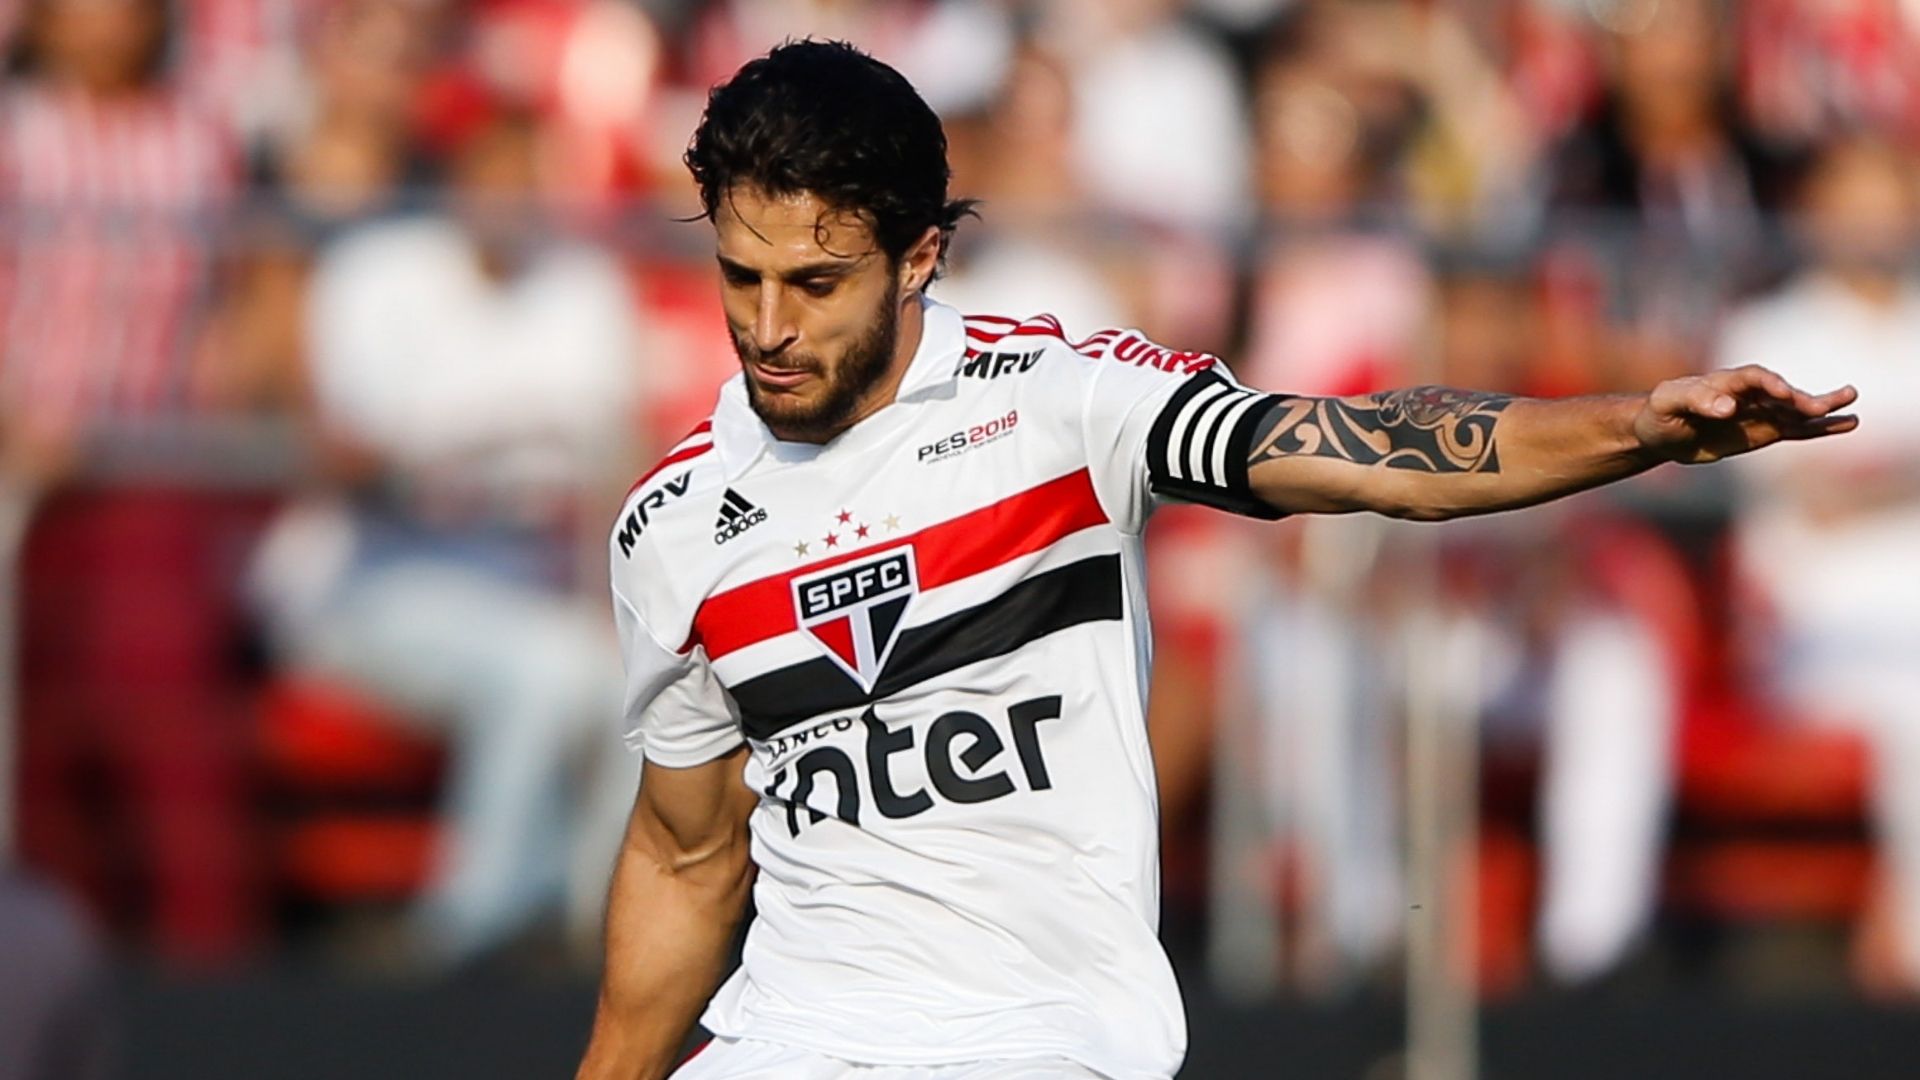 Jogador que passou por São Paulo, Cruzeiro e Fluminense surpreendeu e anunciou sua aposentadoria do futebol